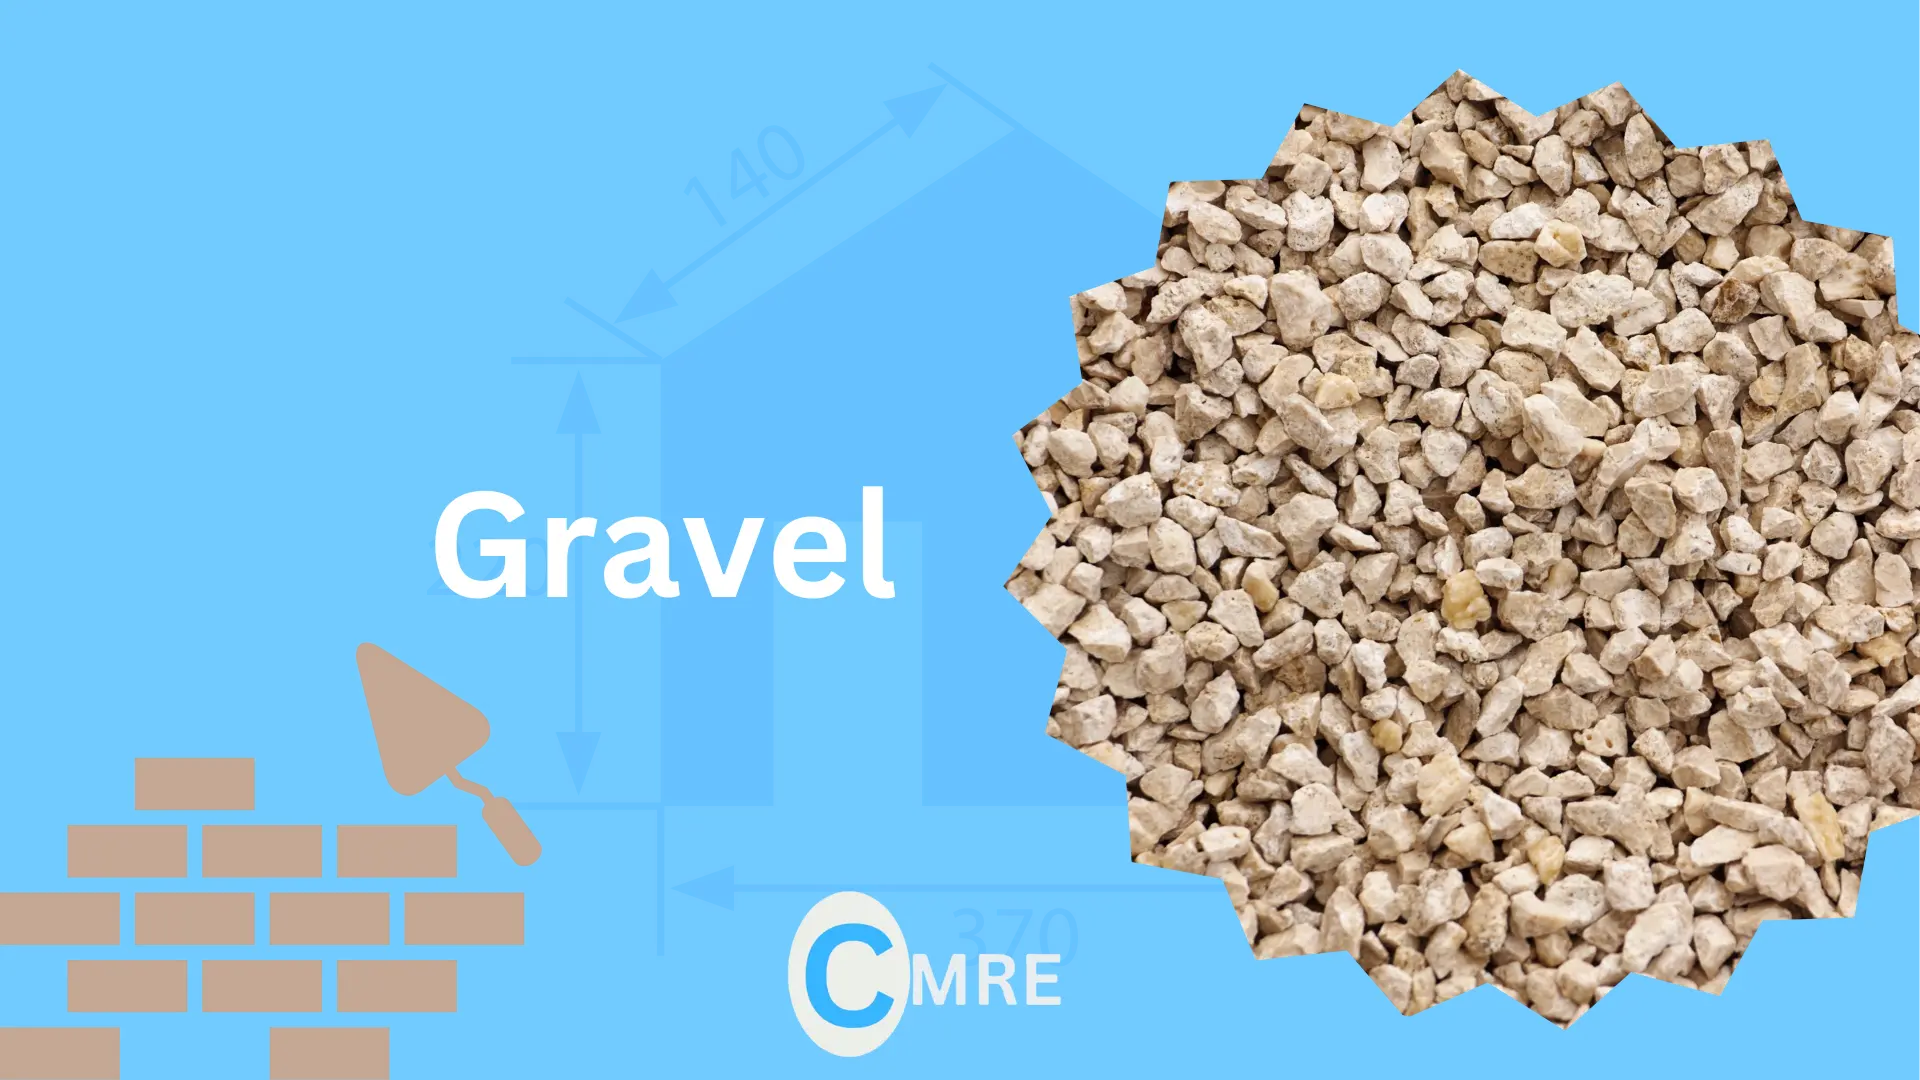 Gravel prices